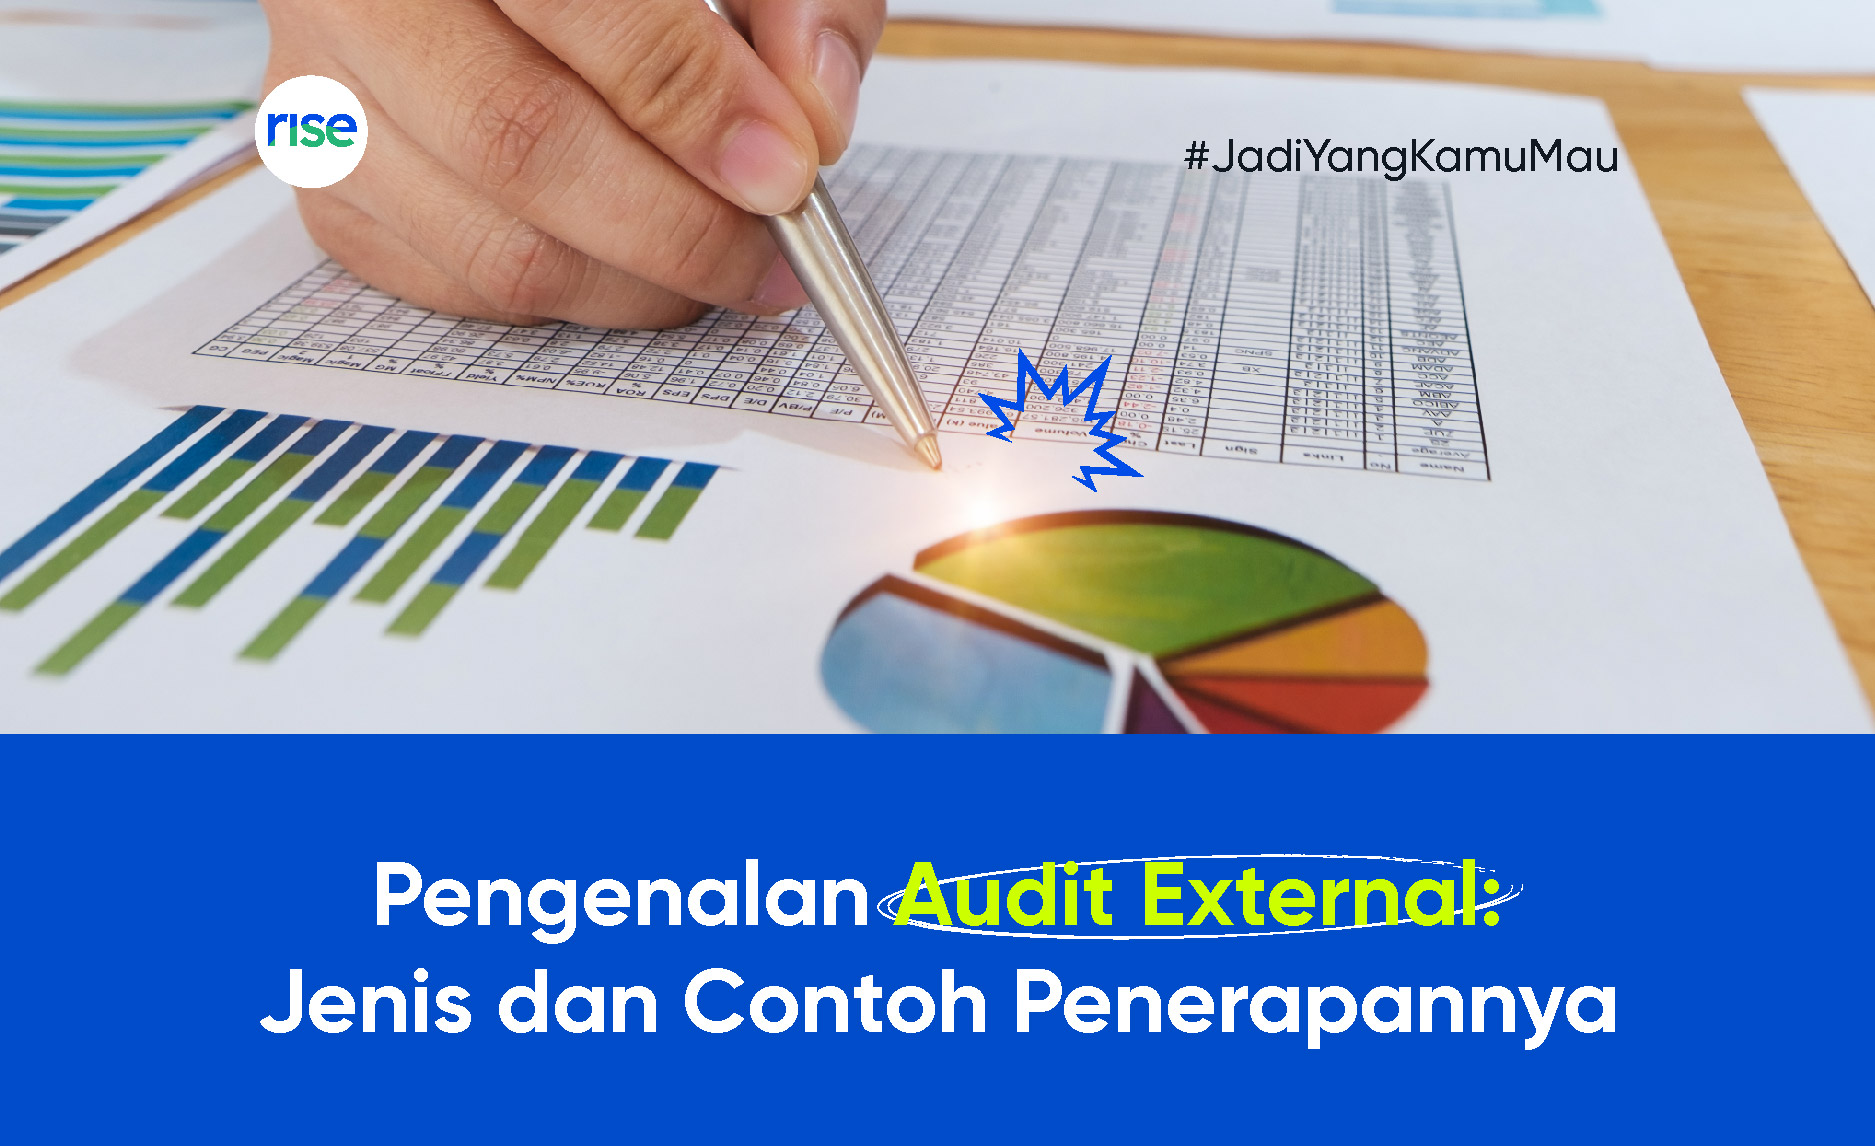 Pengenalan Audit External: Jenis dan Contoh Penerapannya